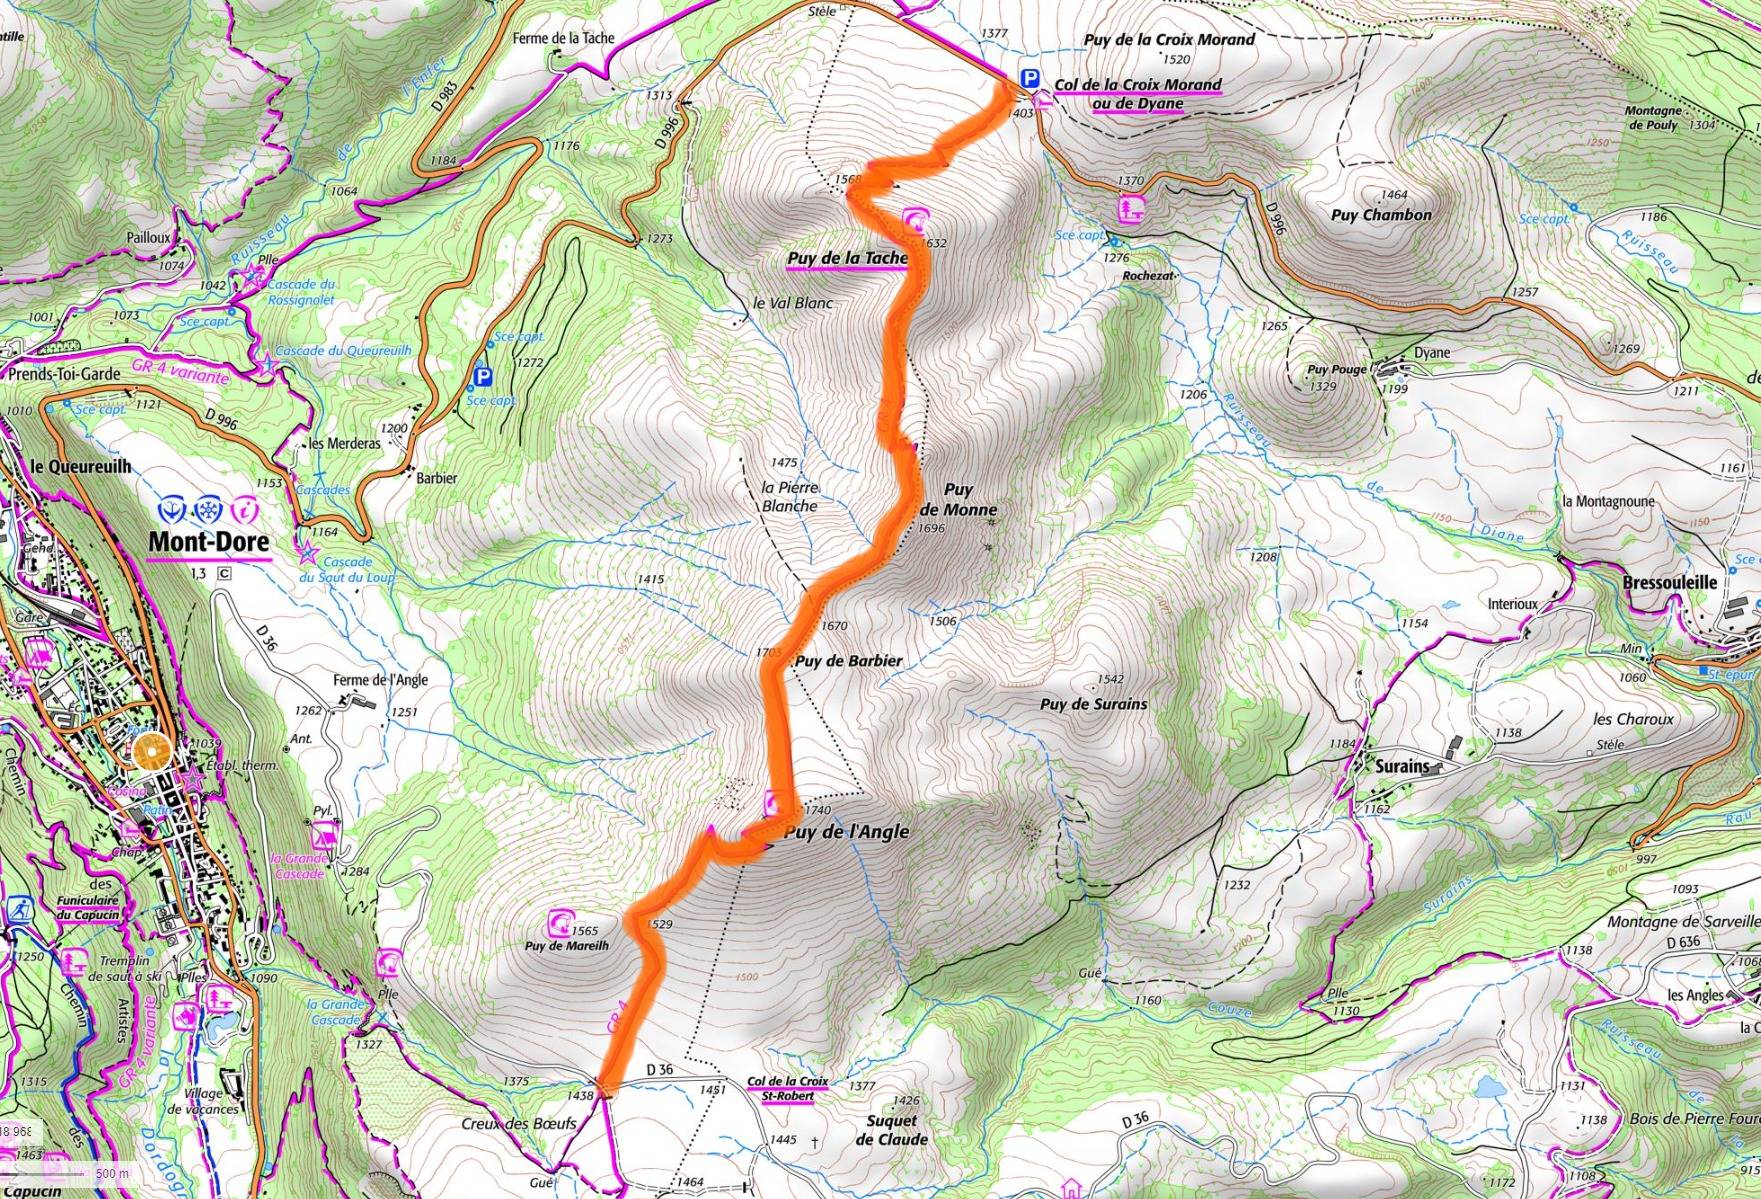 Carte IGN de la randonnée du col de la Croix Morand au col de la croix St Robert